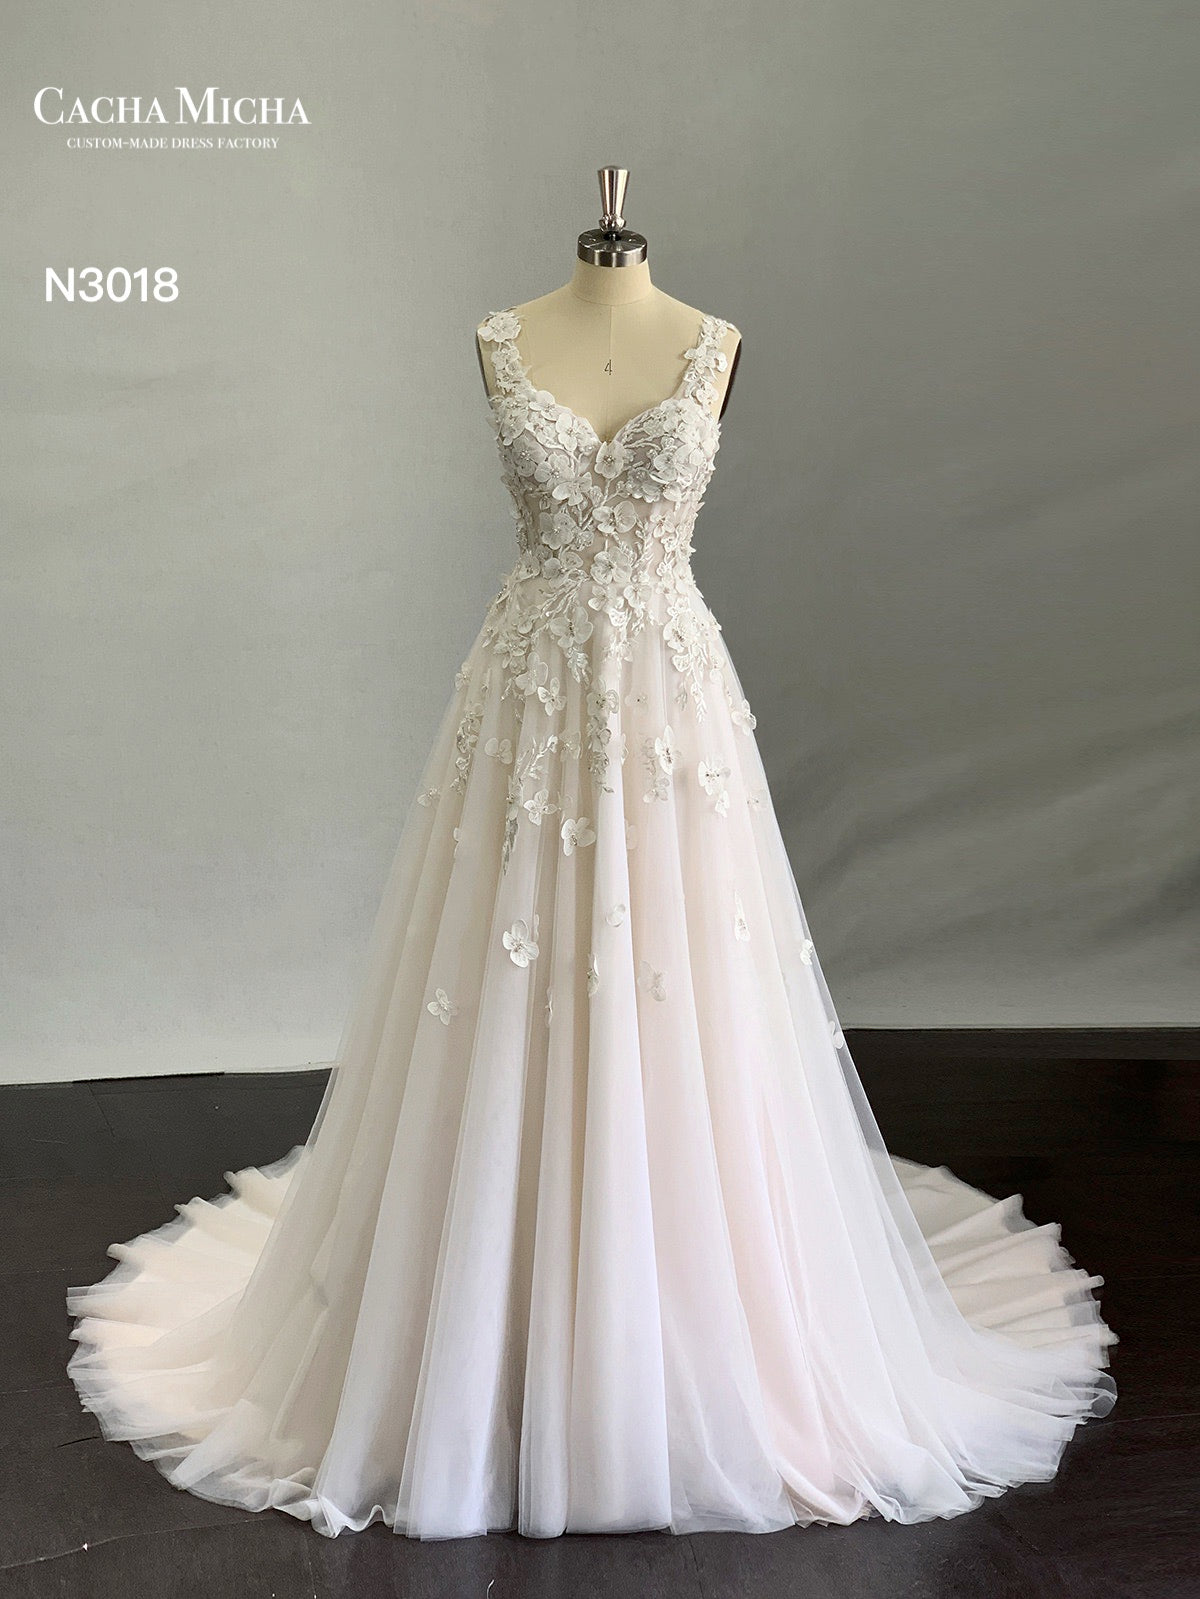 Beautiful 3D Lace Lace Blush Wedding Dress N3018